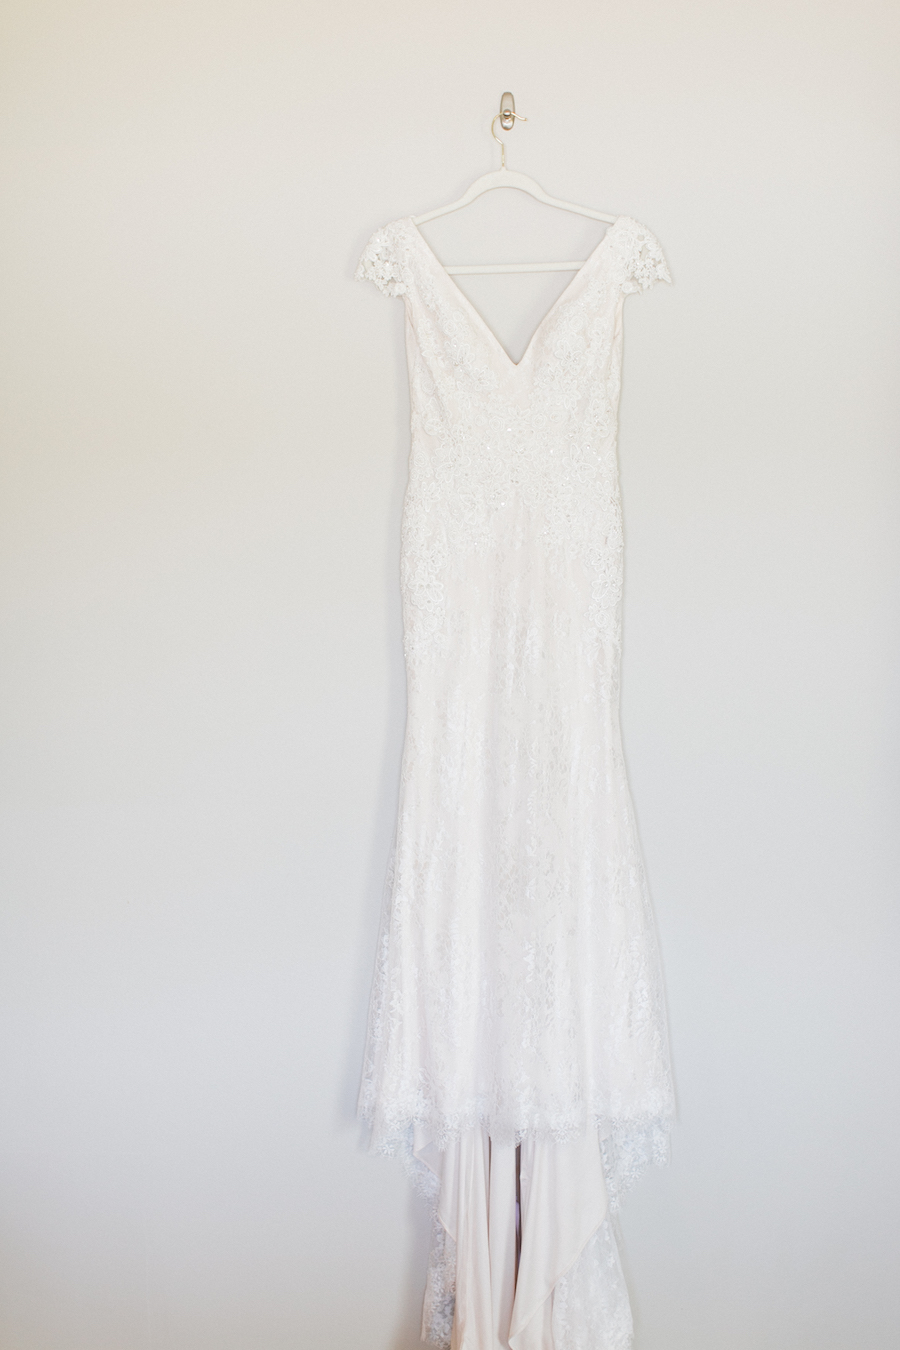 A white wedding dress